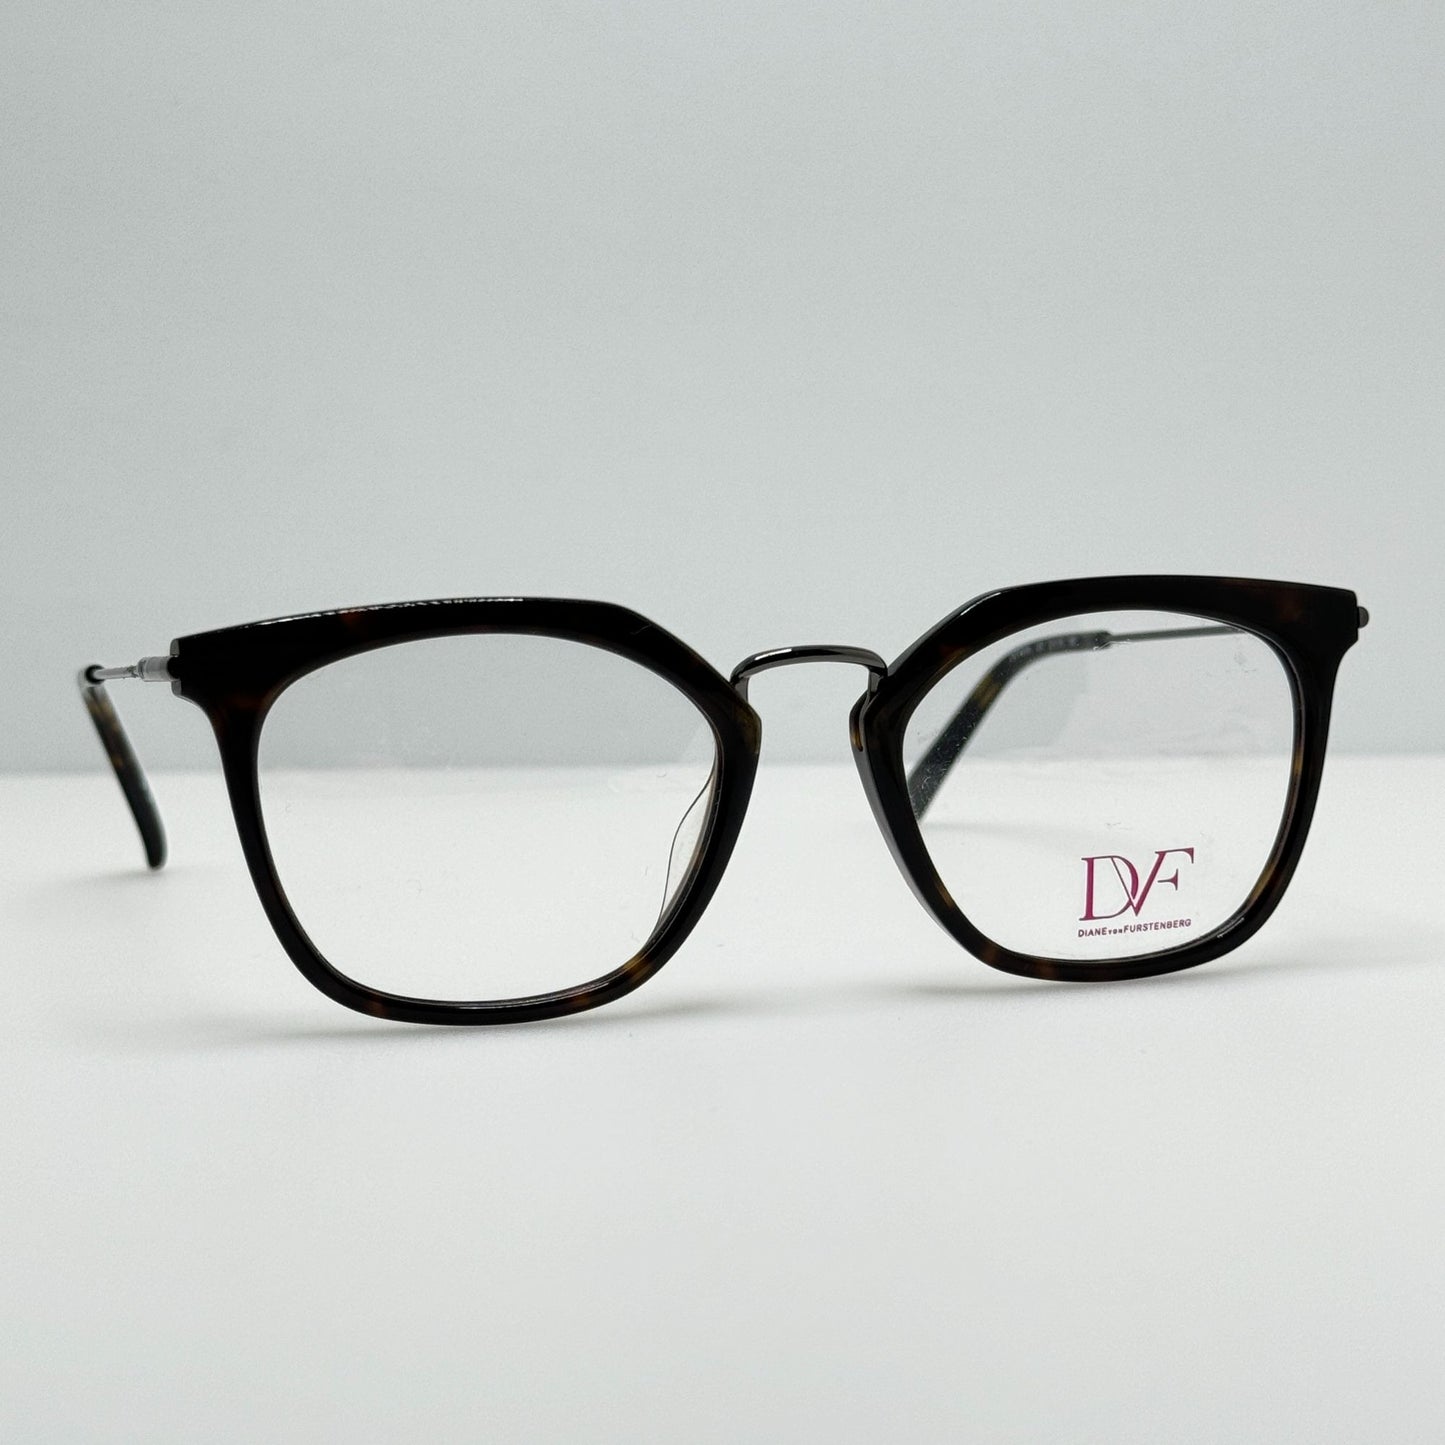 Diane Von Furstenberg Eyeglasses Eye Glasses Frames DVF5096 237 51-19-135